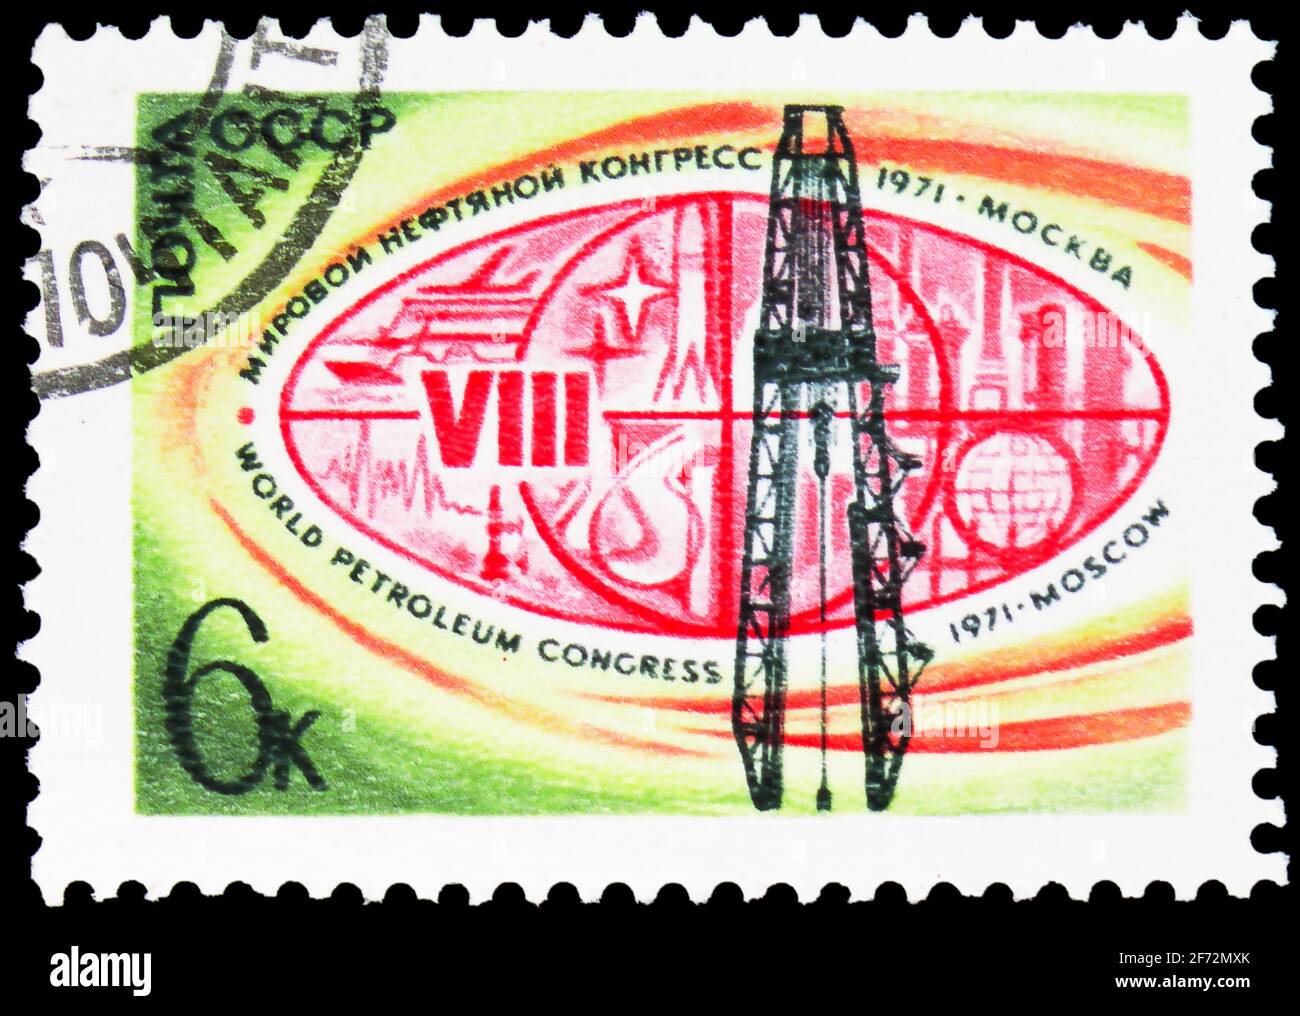 MOSCA, RUSSIA - 12 GENNAIO 2021: Francobollo stampato in URSS (Russia) dedicato all'VIII Congresso Mondiale del petrolio, 1971, Mosca, Congressi internazionali, 1 Foto Stock